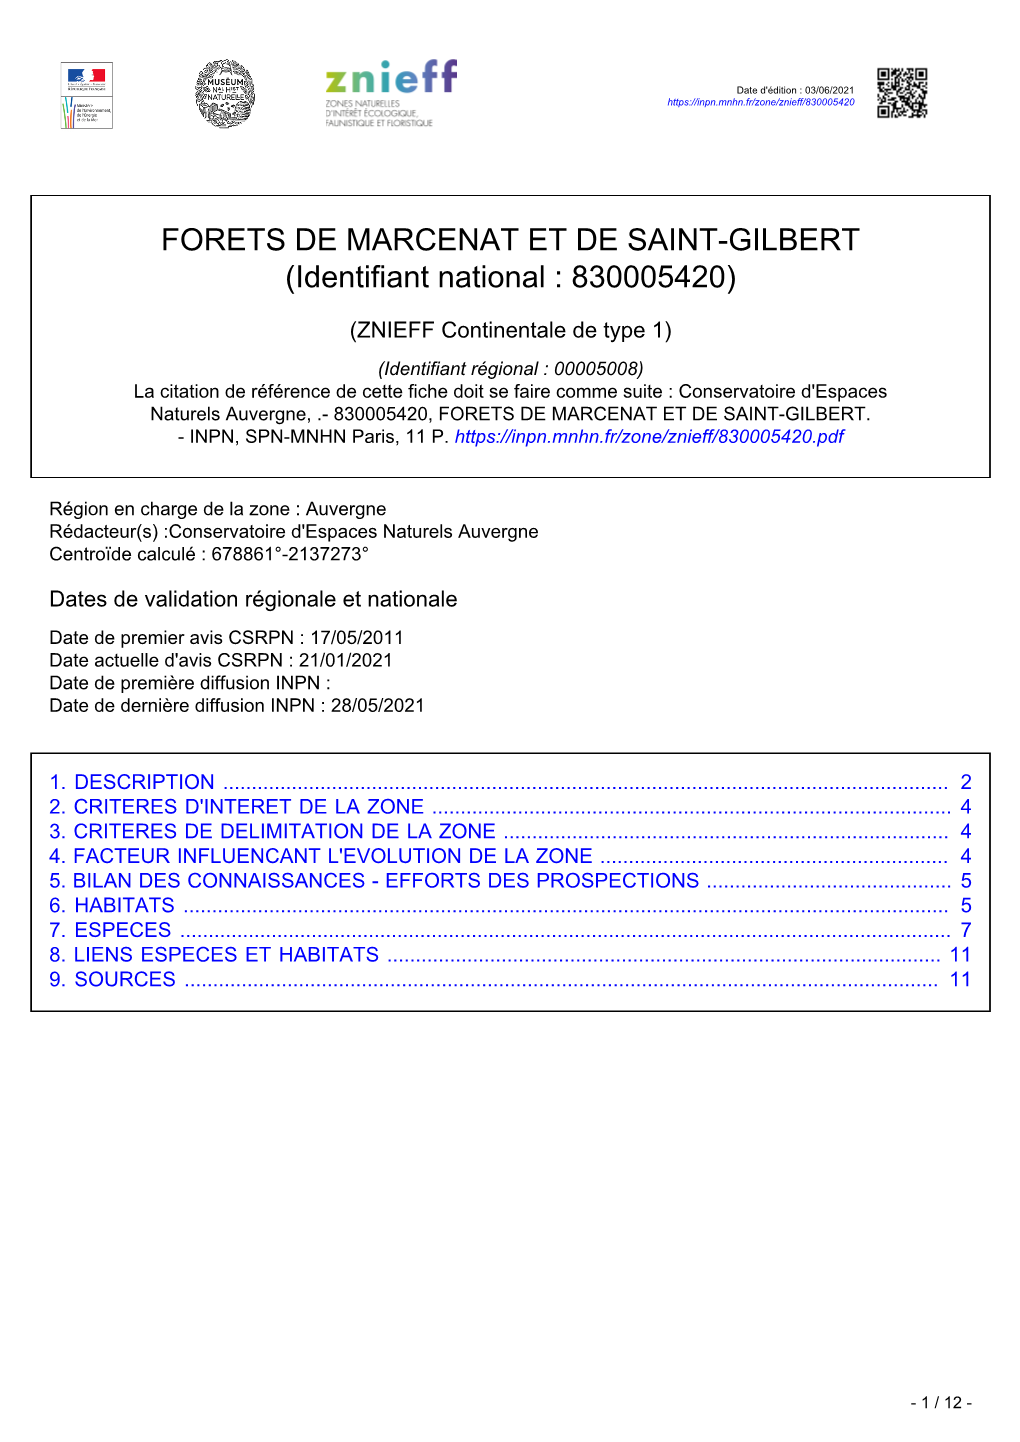 FORETS DE MARCENAT ET DE SAINT-GILBERT (Identifiant National : 830005420)